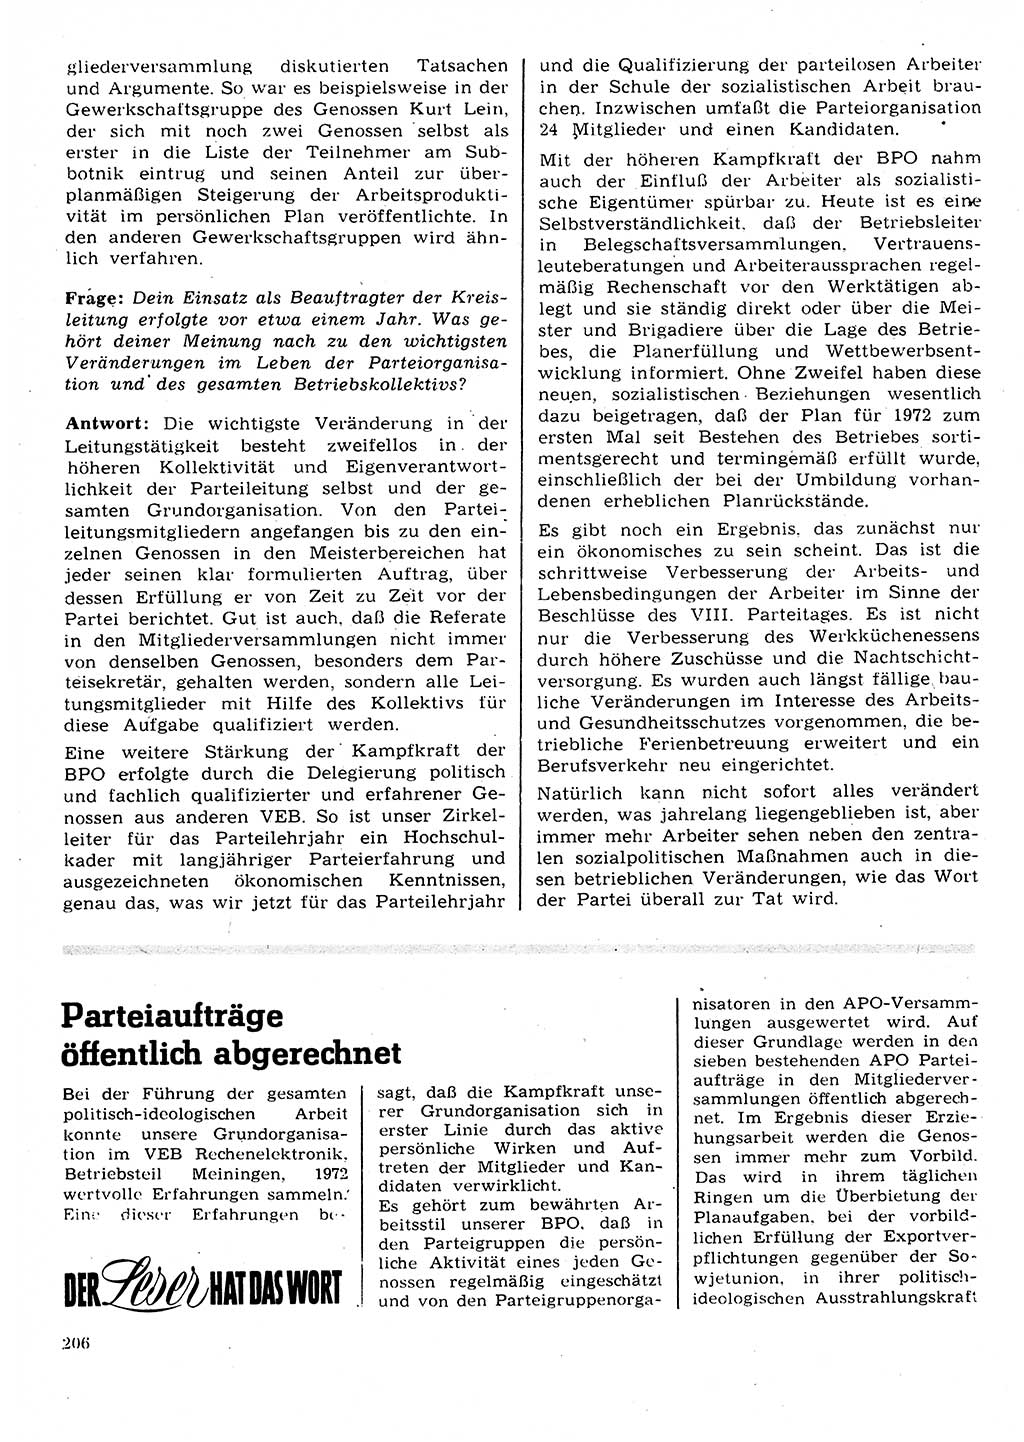 Neuer Weg (NW), Organ des Zentralkomitees (ZK) der SED (Sozialistische Einheitspartei Deutschlands) für Fragen des Parteilebens, 28. Jahrgang [Deutsche Demokratische Republik (DDR)] 1973, Seite 206 (NW ZK SED DDR 1973, S. 206)